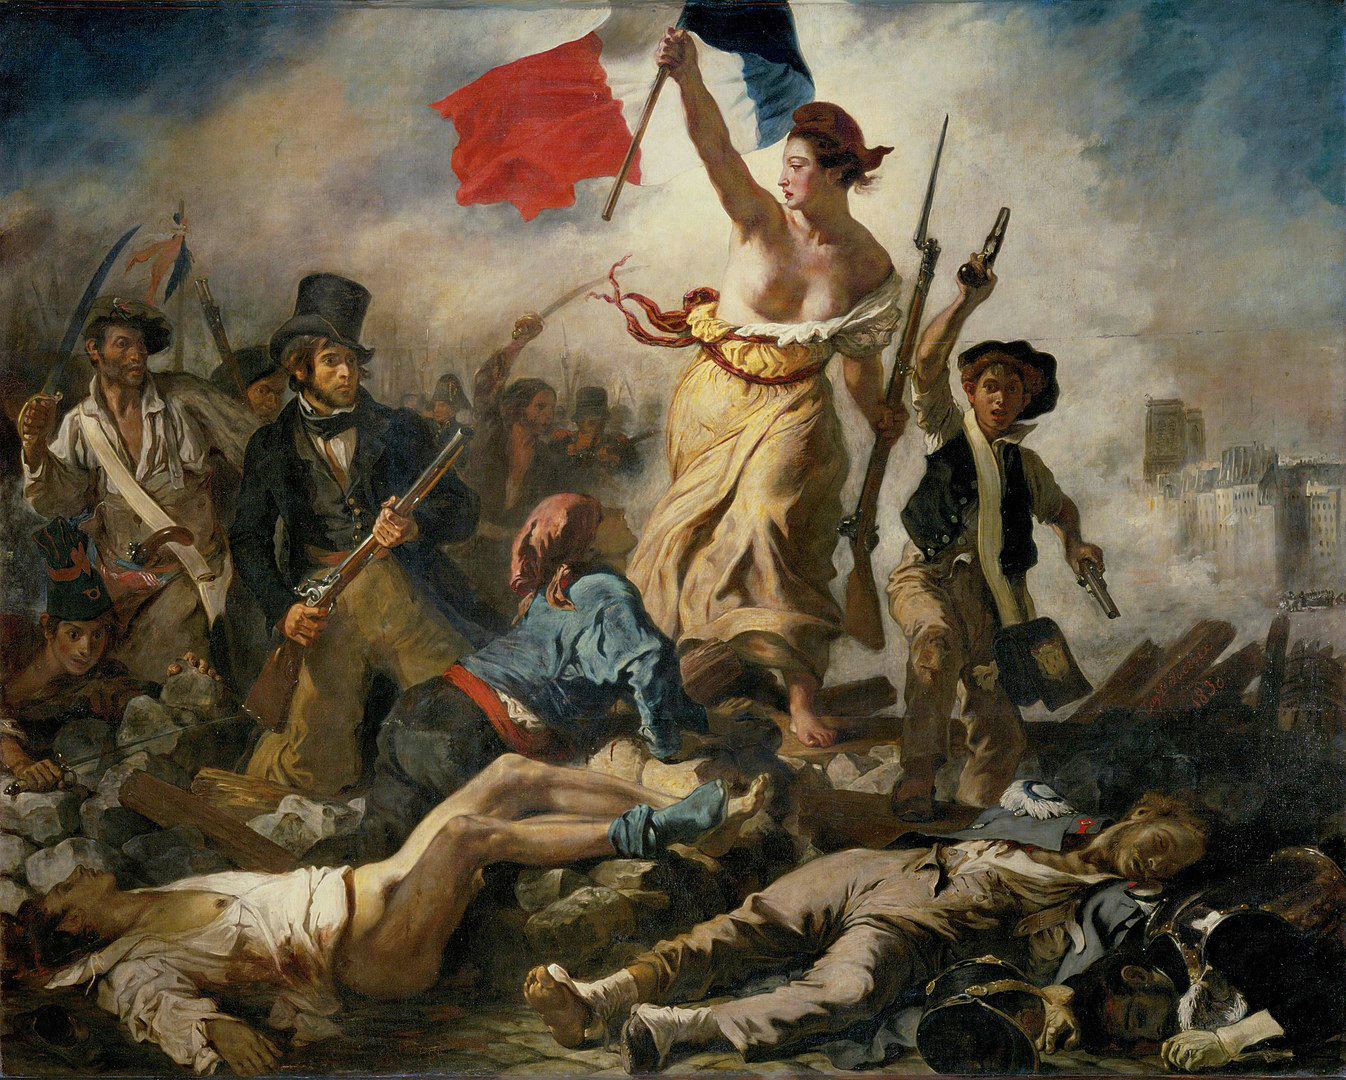 La libertad guiando al pueblo, Eugène Delacroix, 1830 